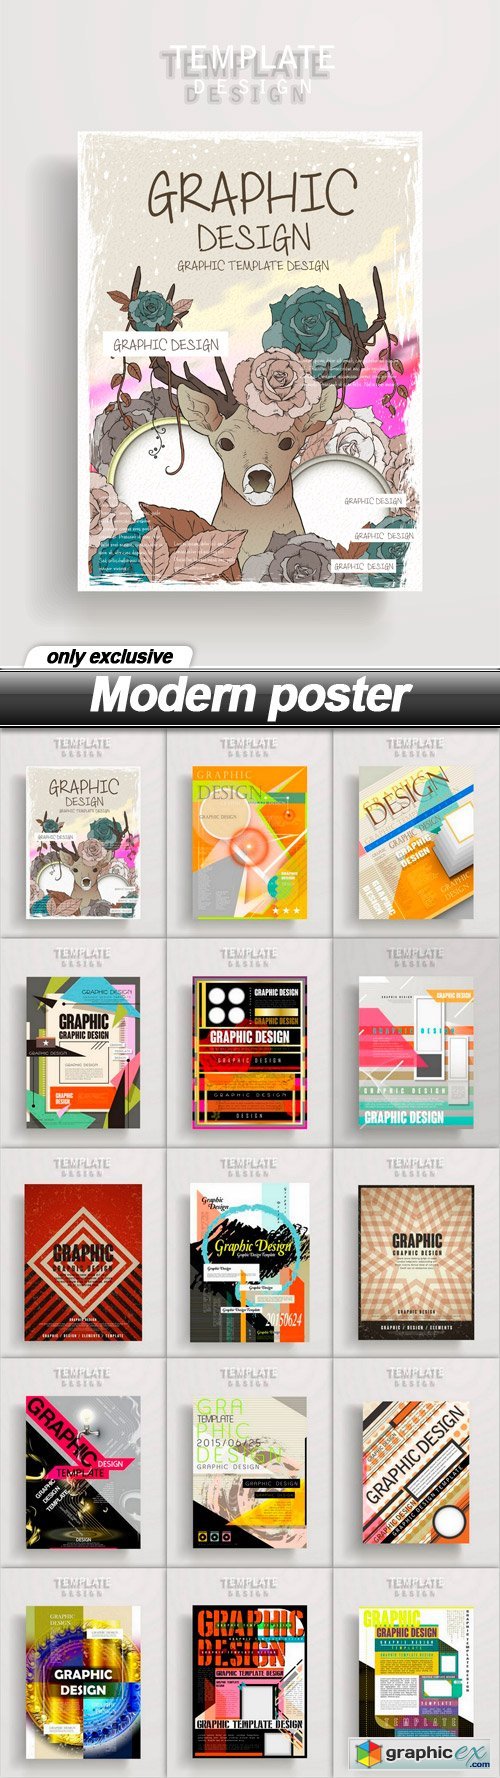 Modern poster - 15 EPS